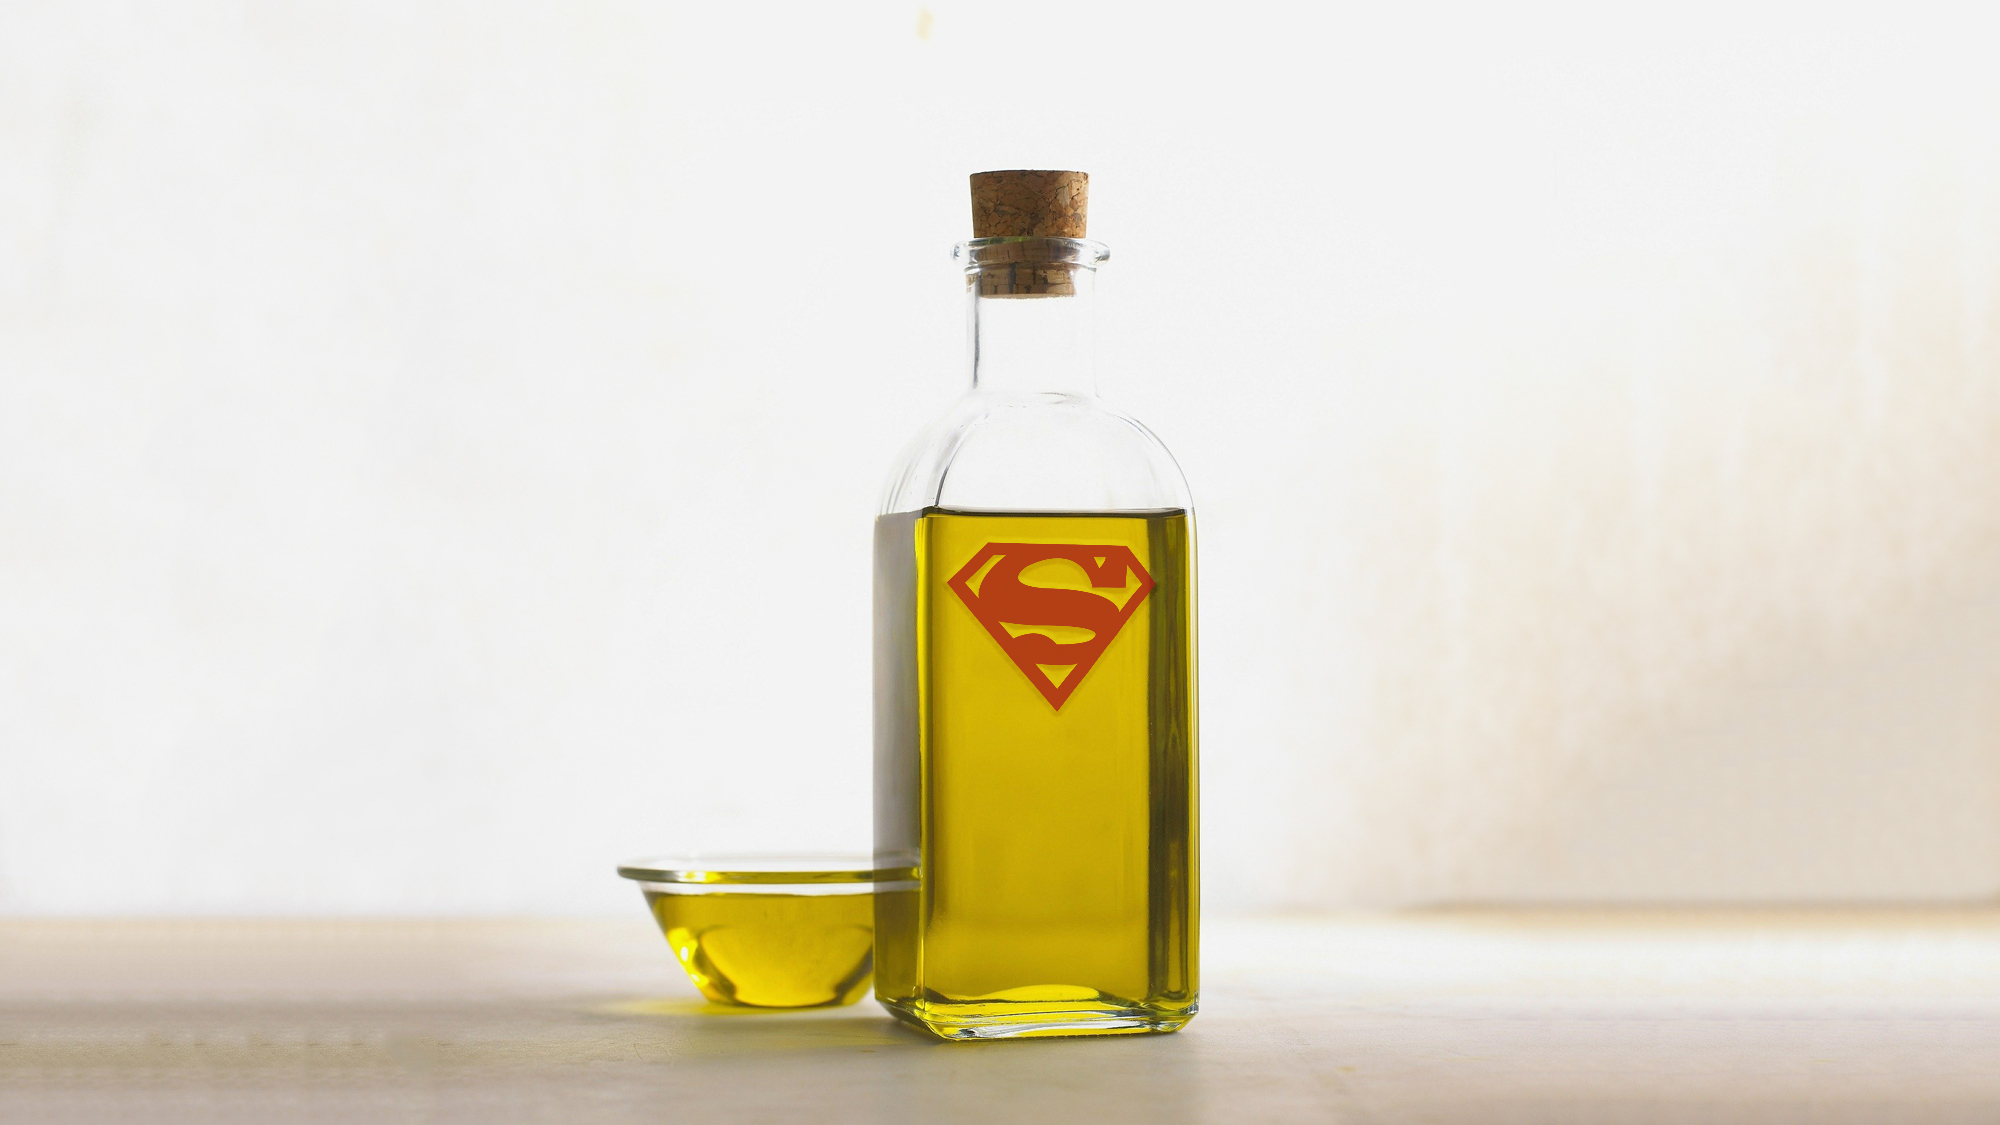 El aceite de oliva puede ser enriquecido para mejorar sus calidades cardioprotectoras. Imagen original de Marge Nauer en Pixabay